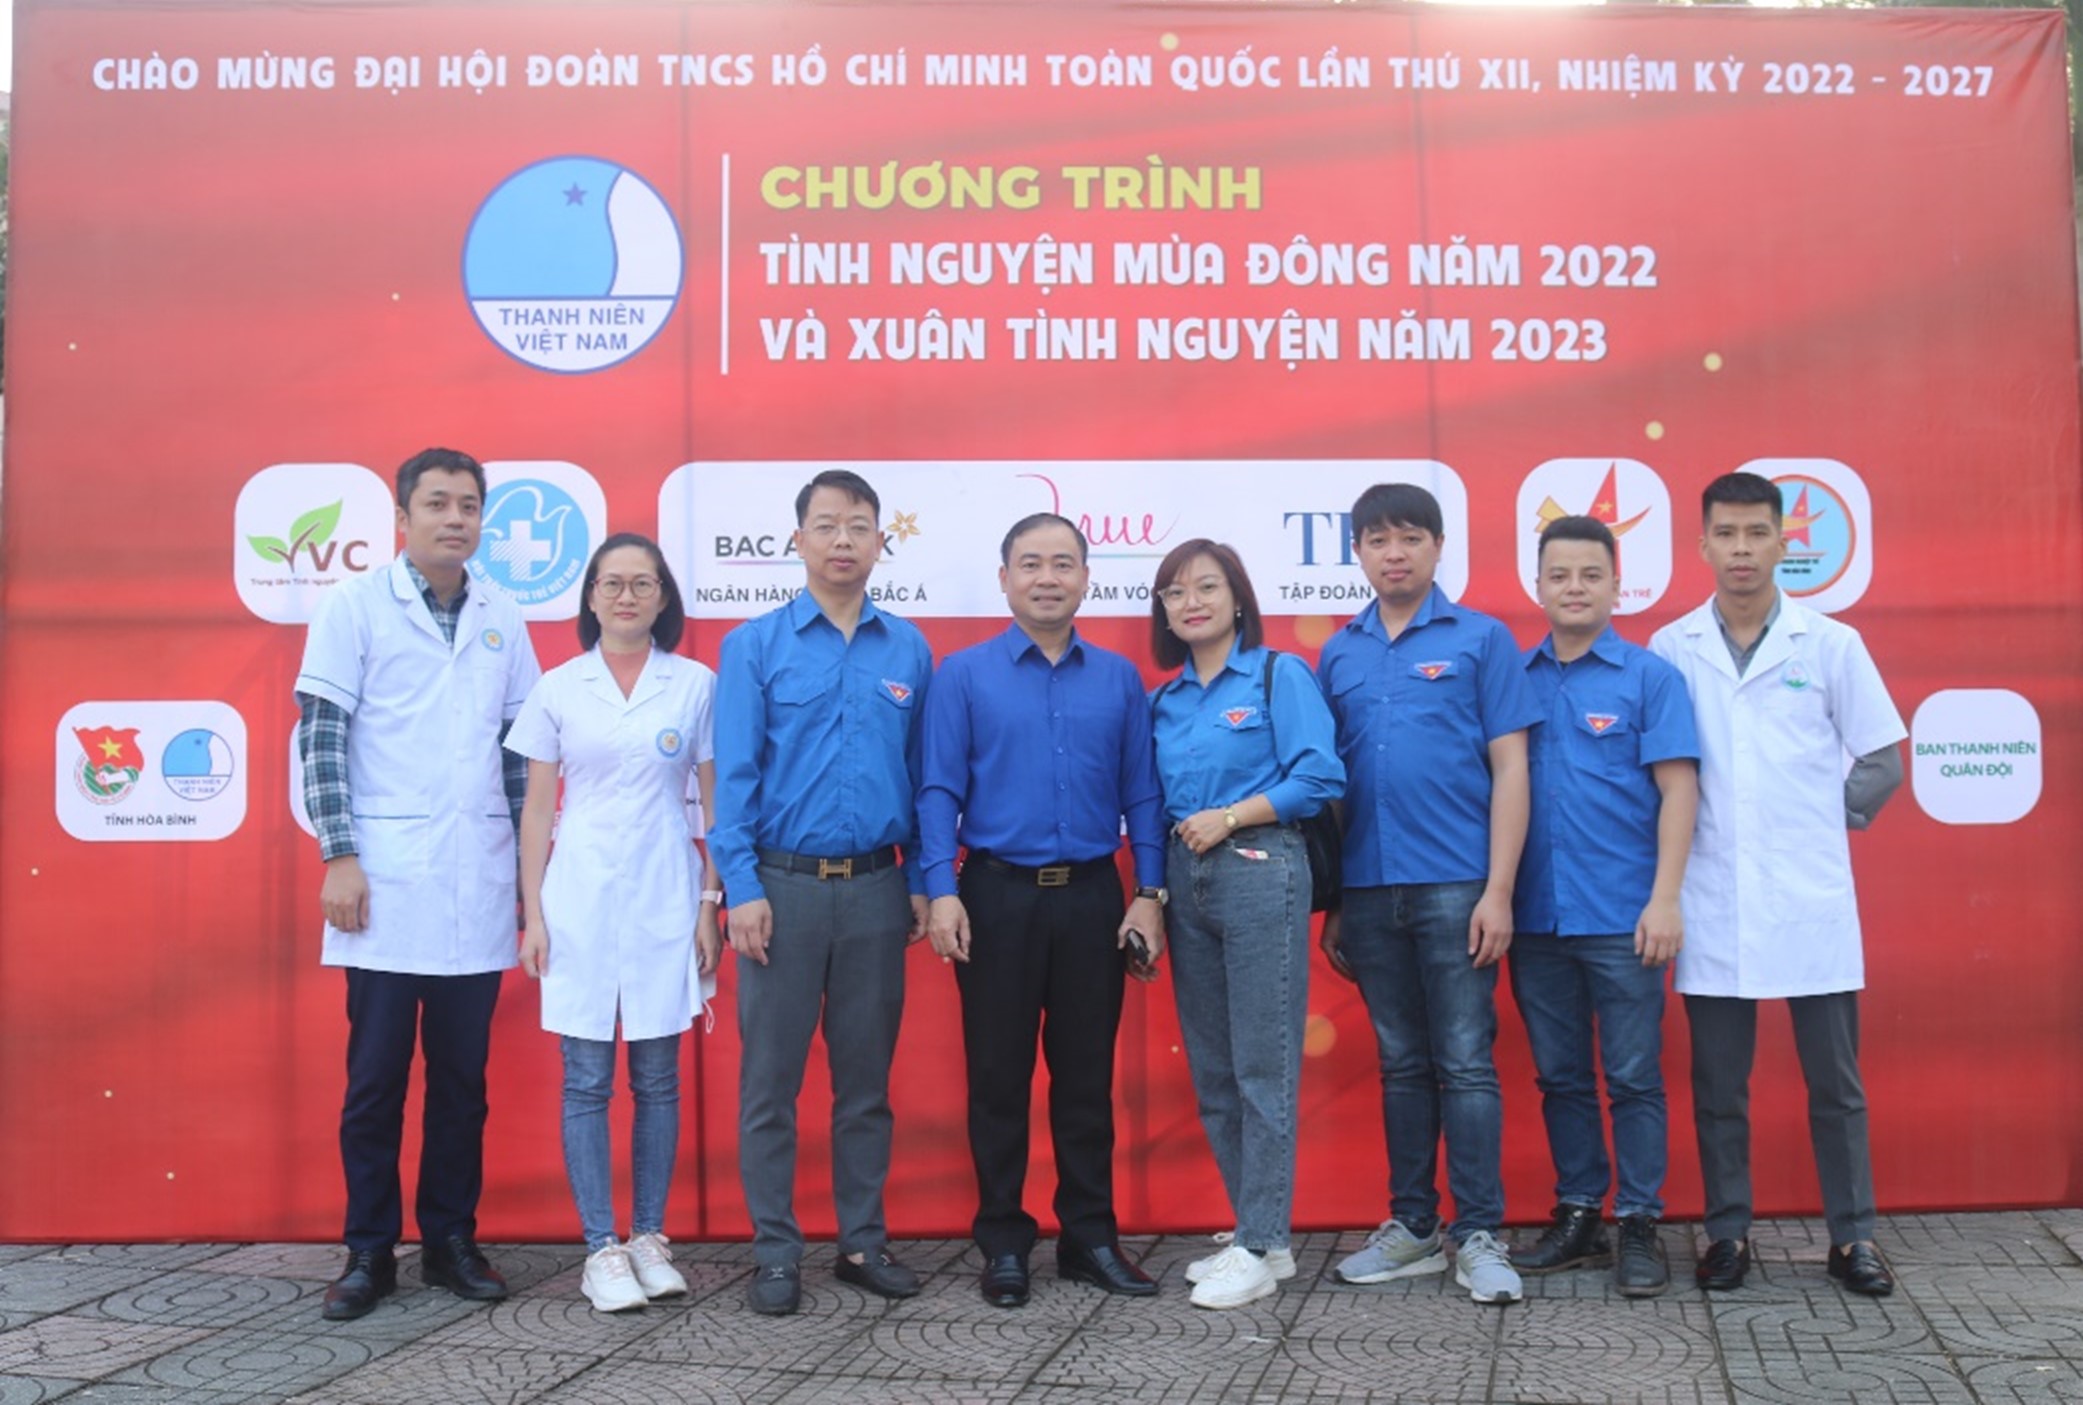  Đoàn thanh niên Bệnh viện Đa khoa tỉnh Hòa Bình tham dự Lễ xuất quân chương trình “Tình nguyện mùa Đông năm 2022 và Xuân tình nguyện năm 2023